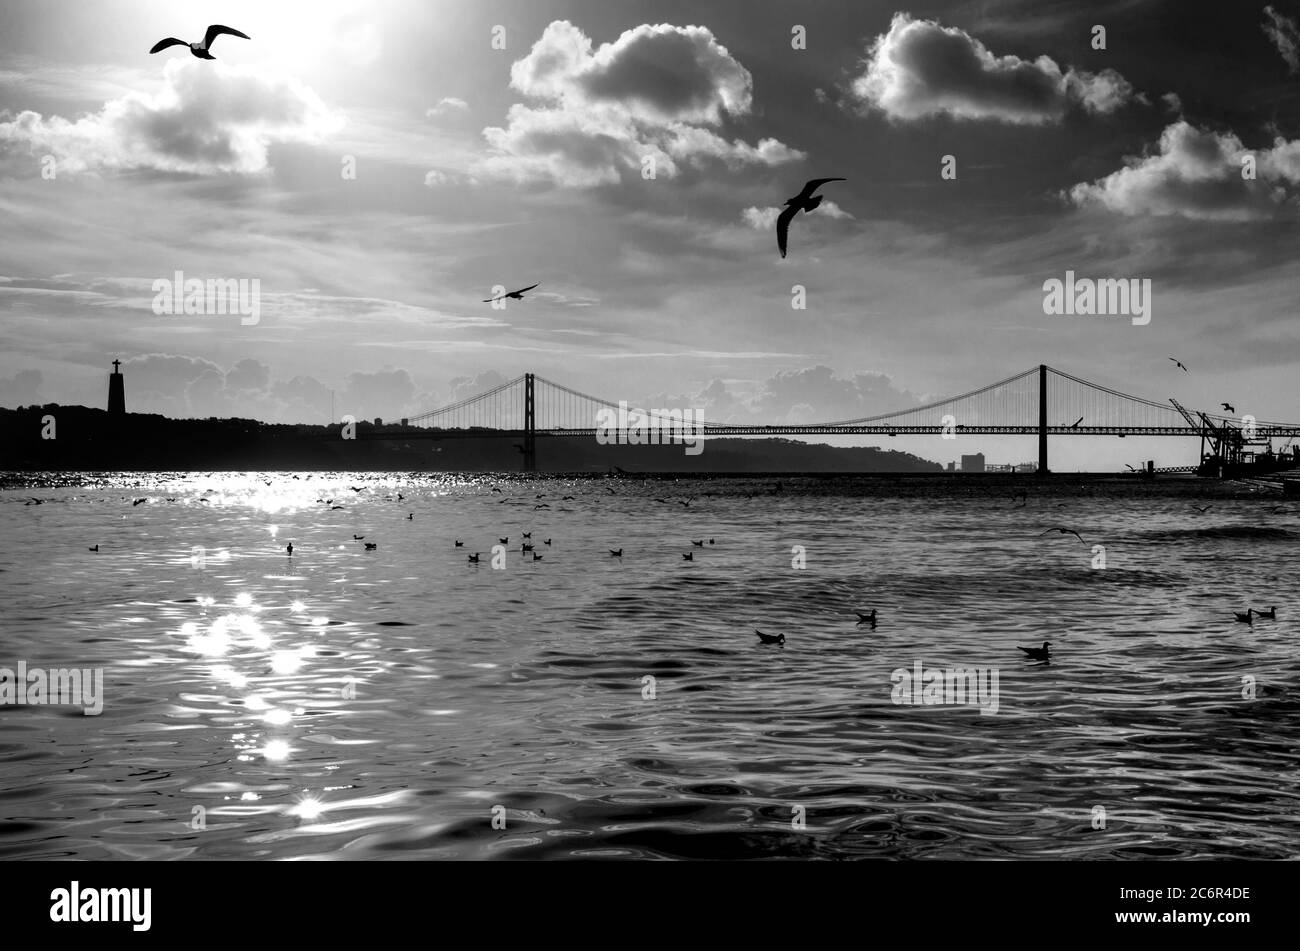 Le pont du 25 avril (Ponte 25 de Abril) traversant le Tage (Tejo), Lisbonne, Portugal. Paysage urbain artistique noir et blanc avec rivière et dramat Banque D'Images